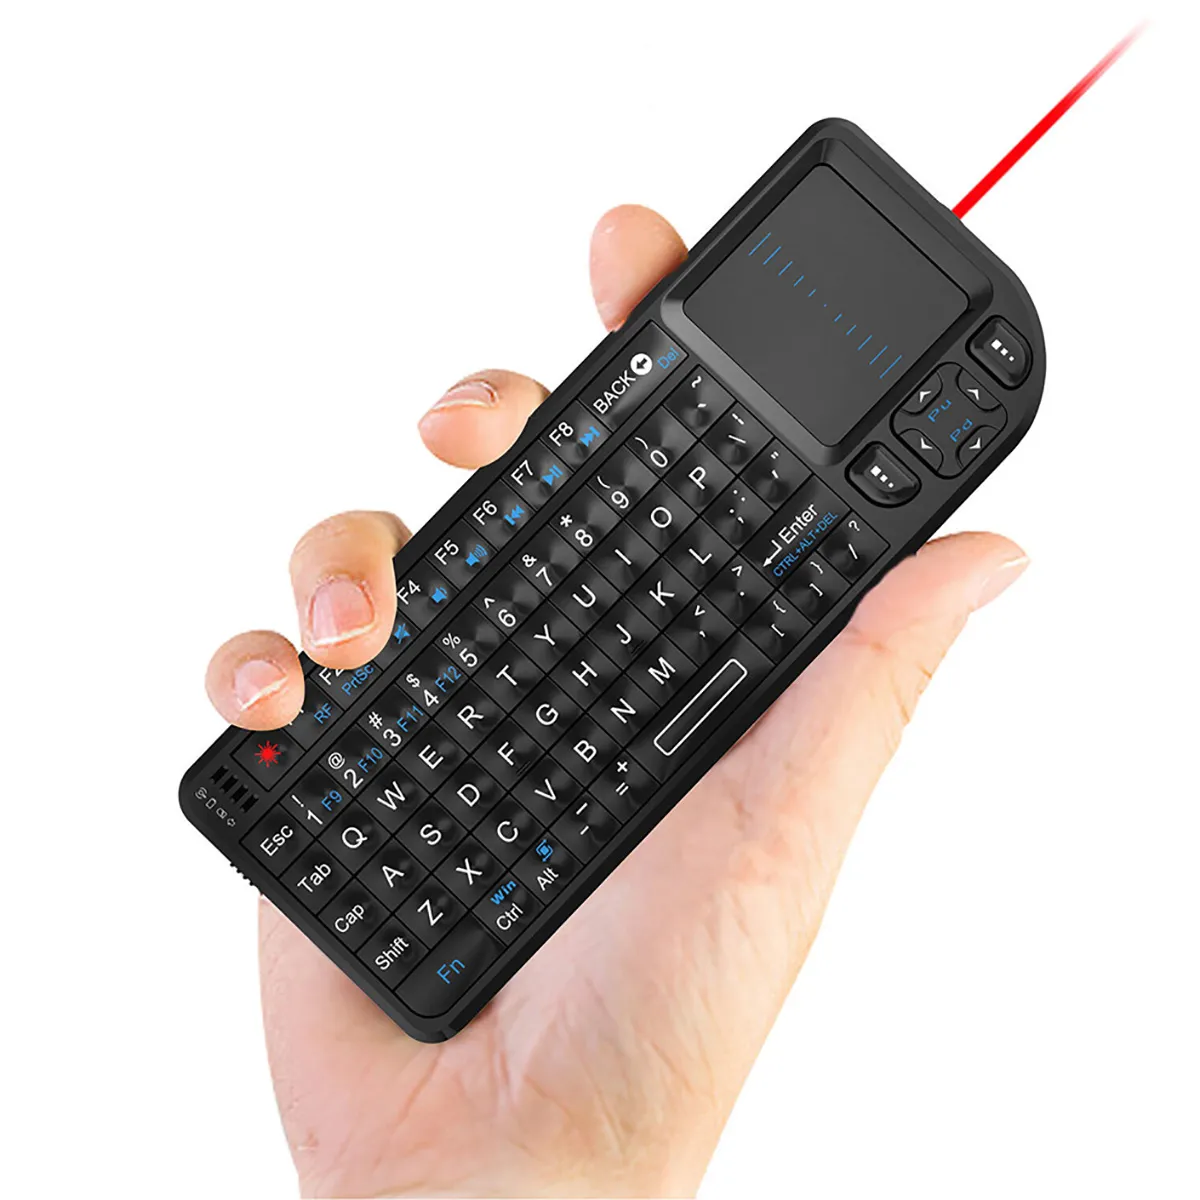 Mini clavier Rii X8 2.4GHz clavier russe sans fil avec pavé